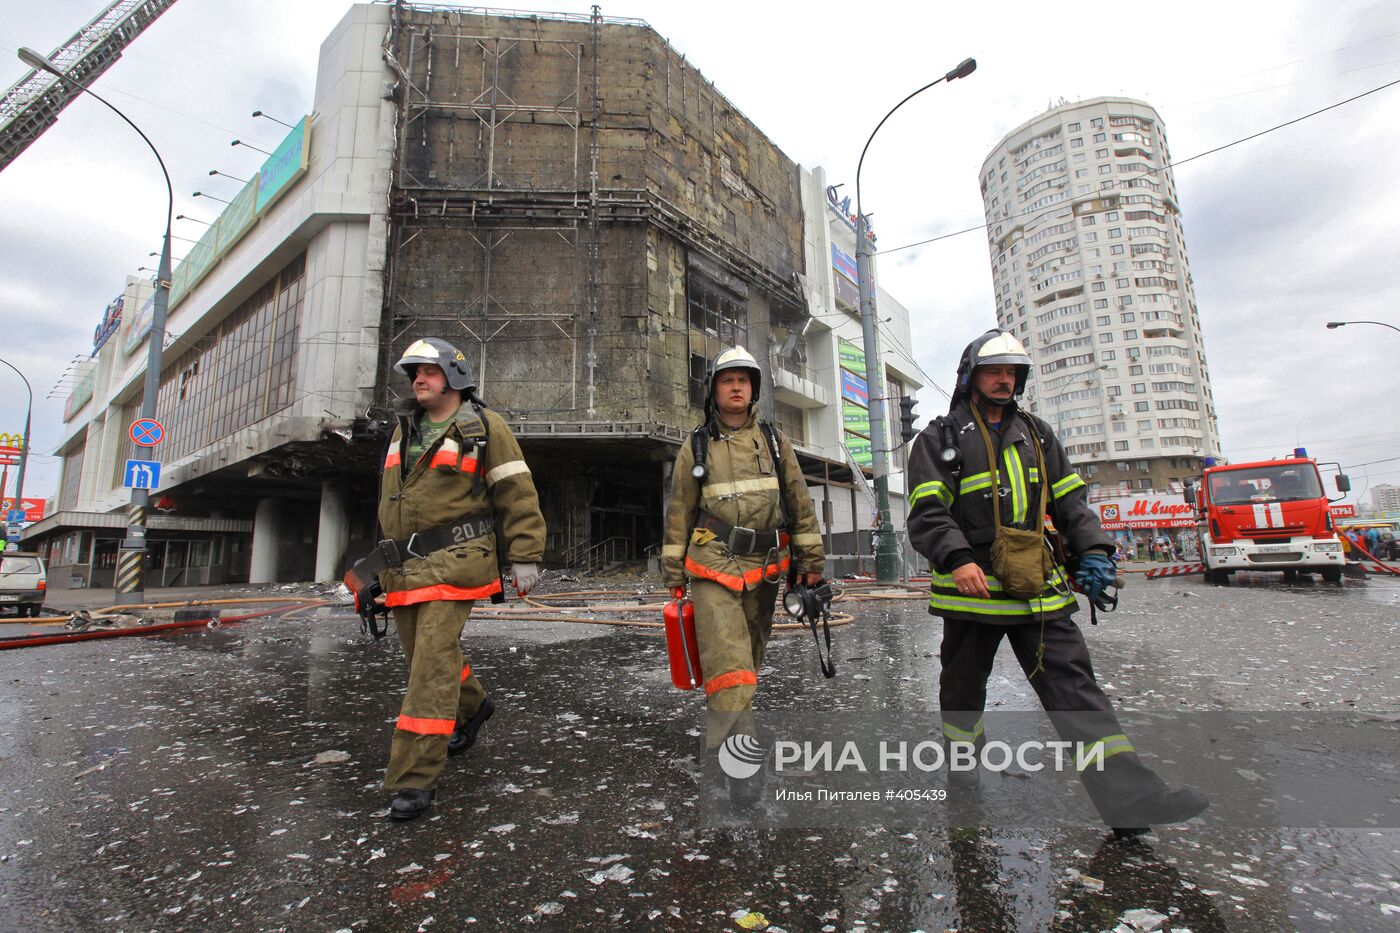 Пожар в ТРЦ "Мариэль" на юго-востоке Москвы